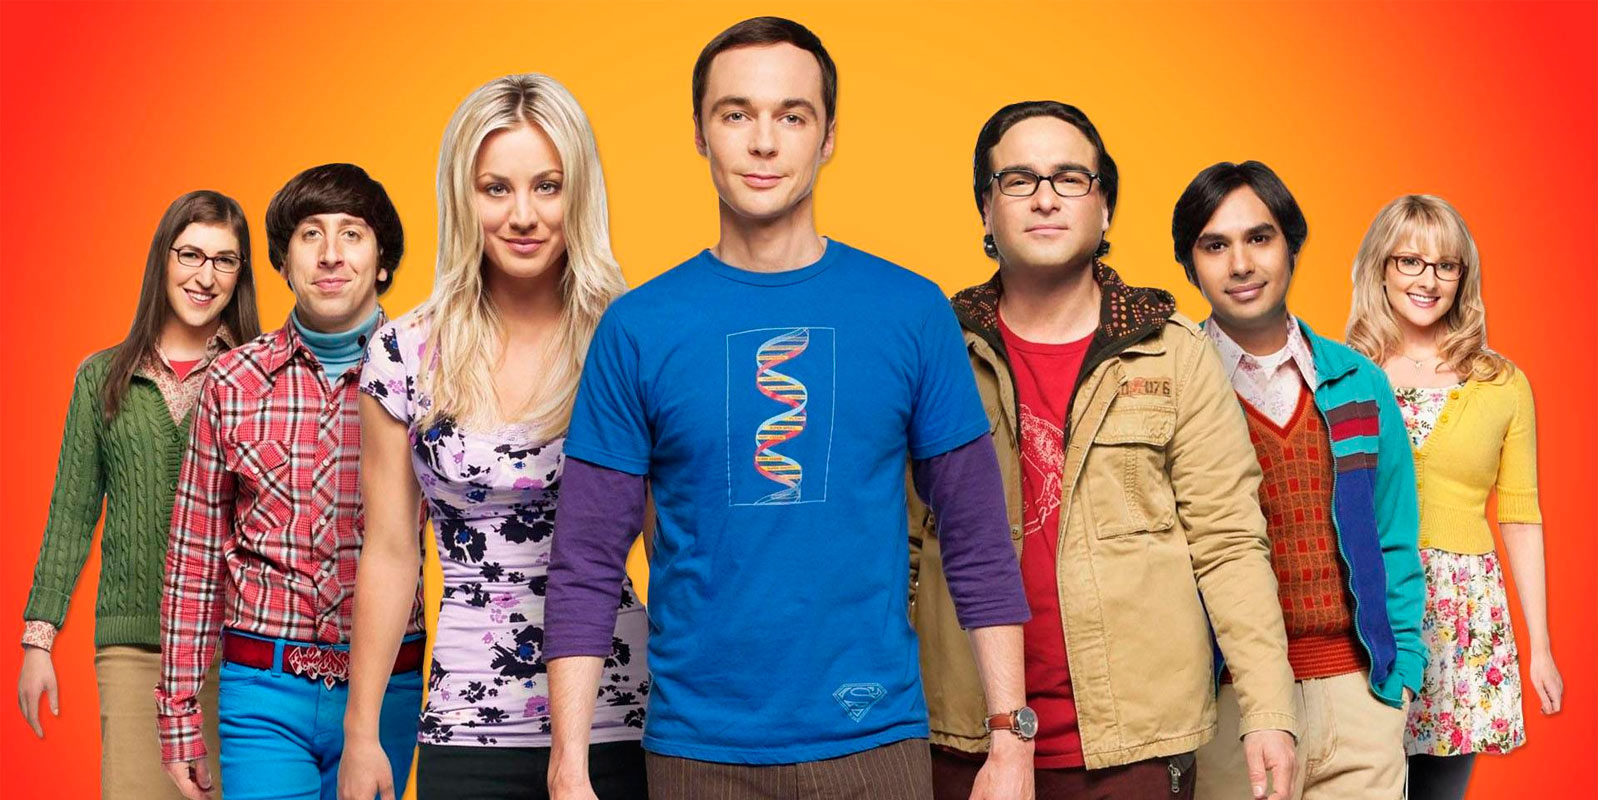 Reino Unido censura una de las escenas de la nueva temporada de 'The Big Bang Theory' por "demasiado sexual"